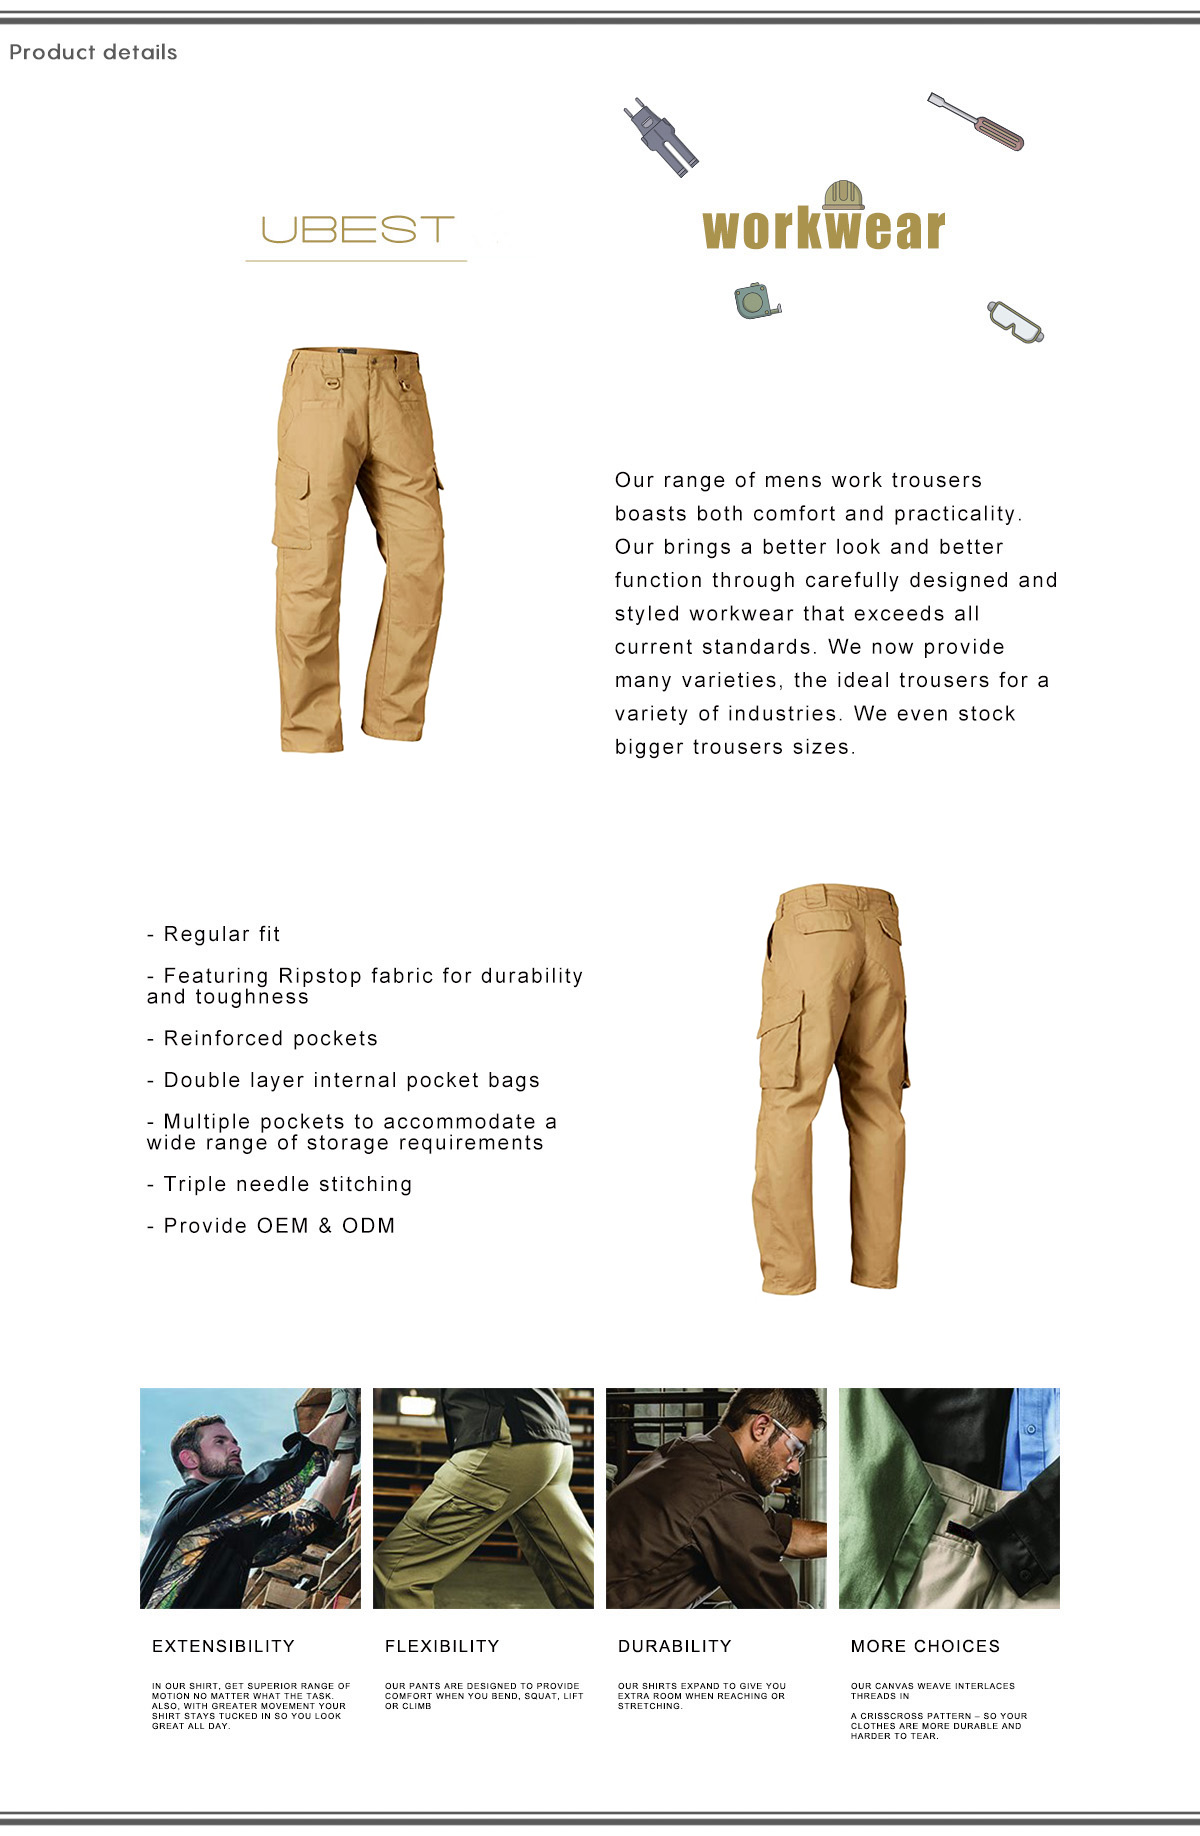 Khaki Cargo Six Pocket Pants For Men